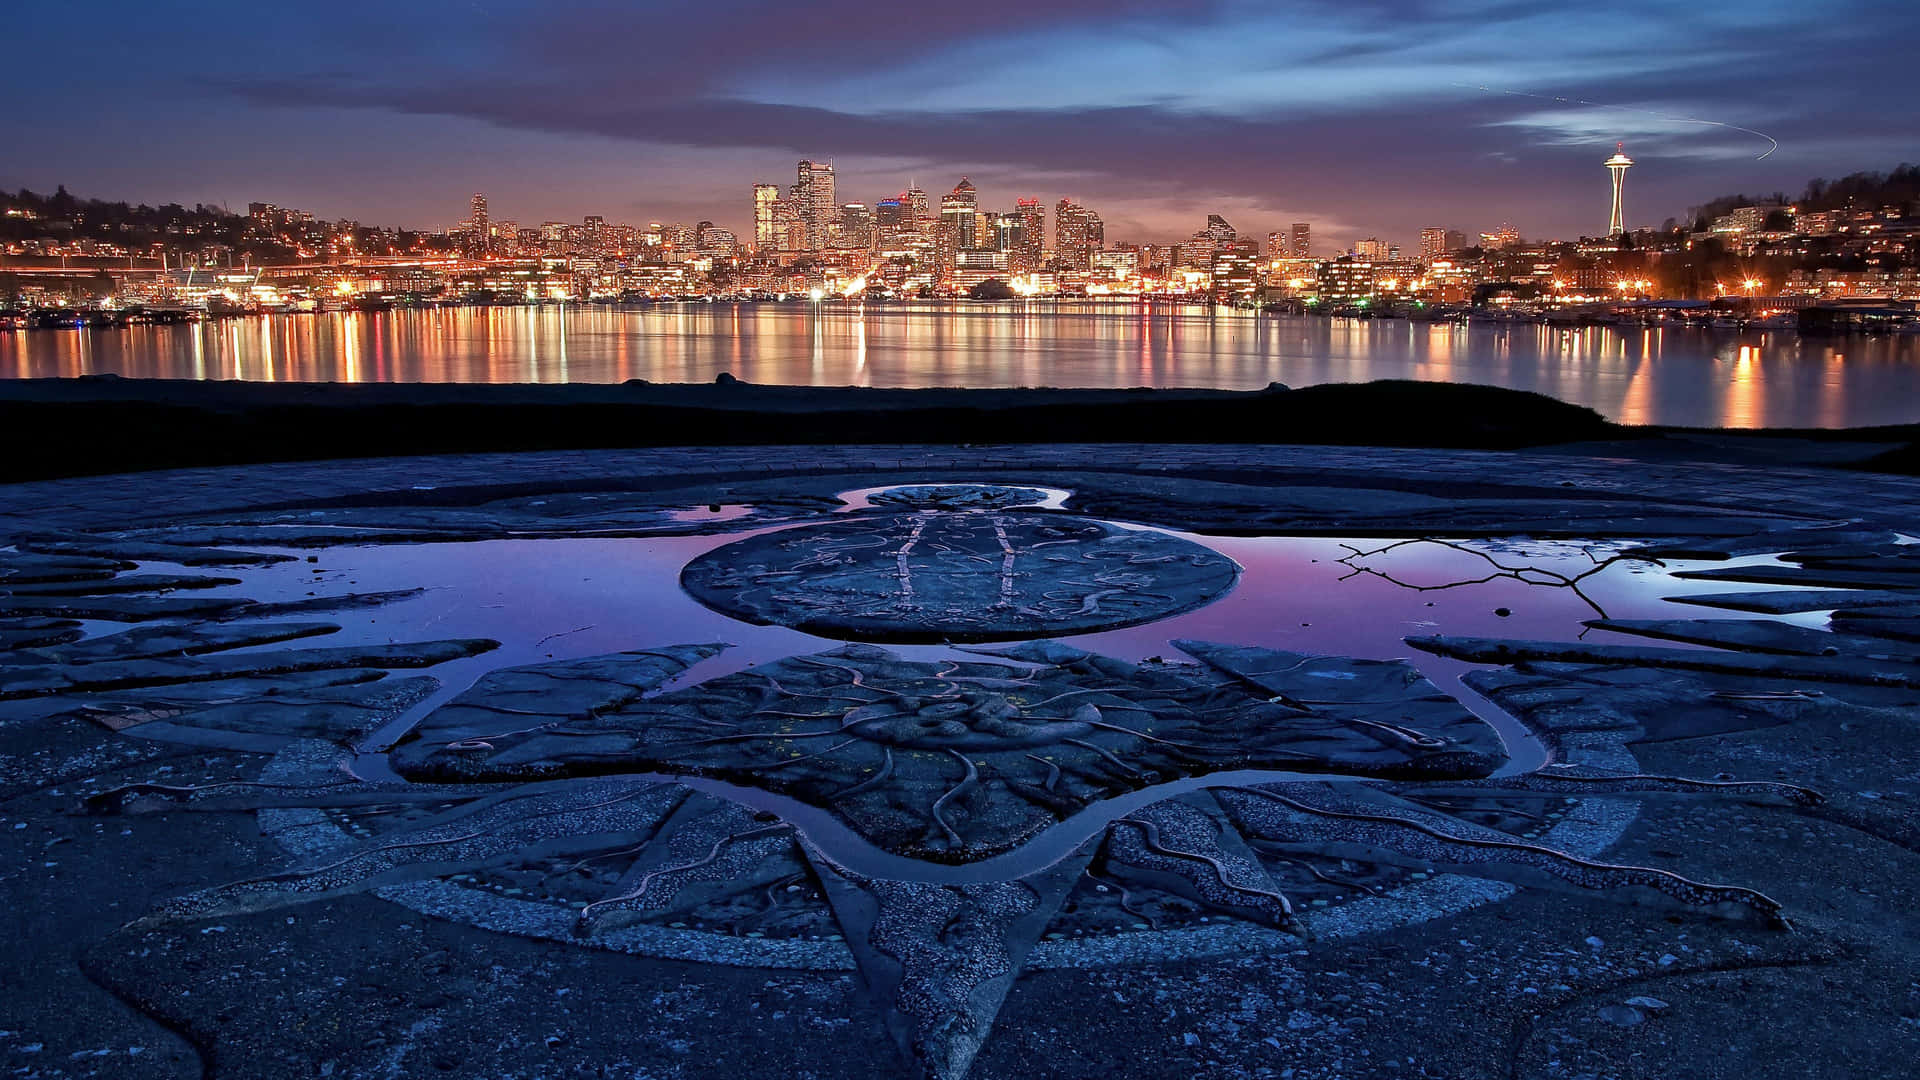 Seattlestadtbild Leuchtend Im Licht Des Sonnenuntergangs Wallpaper